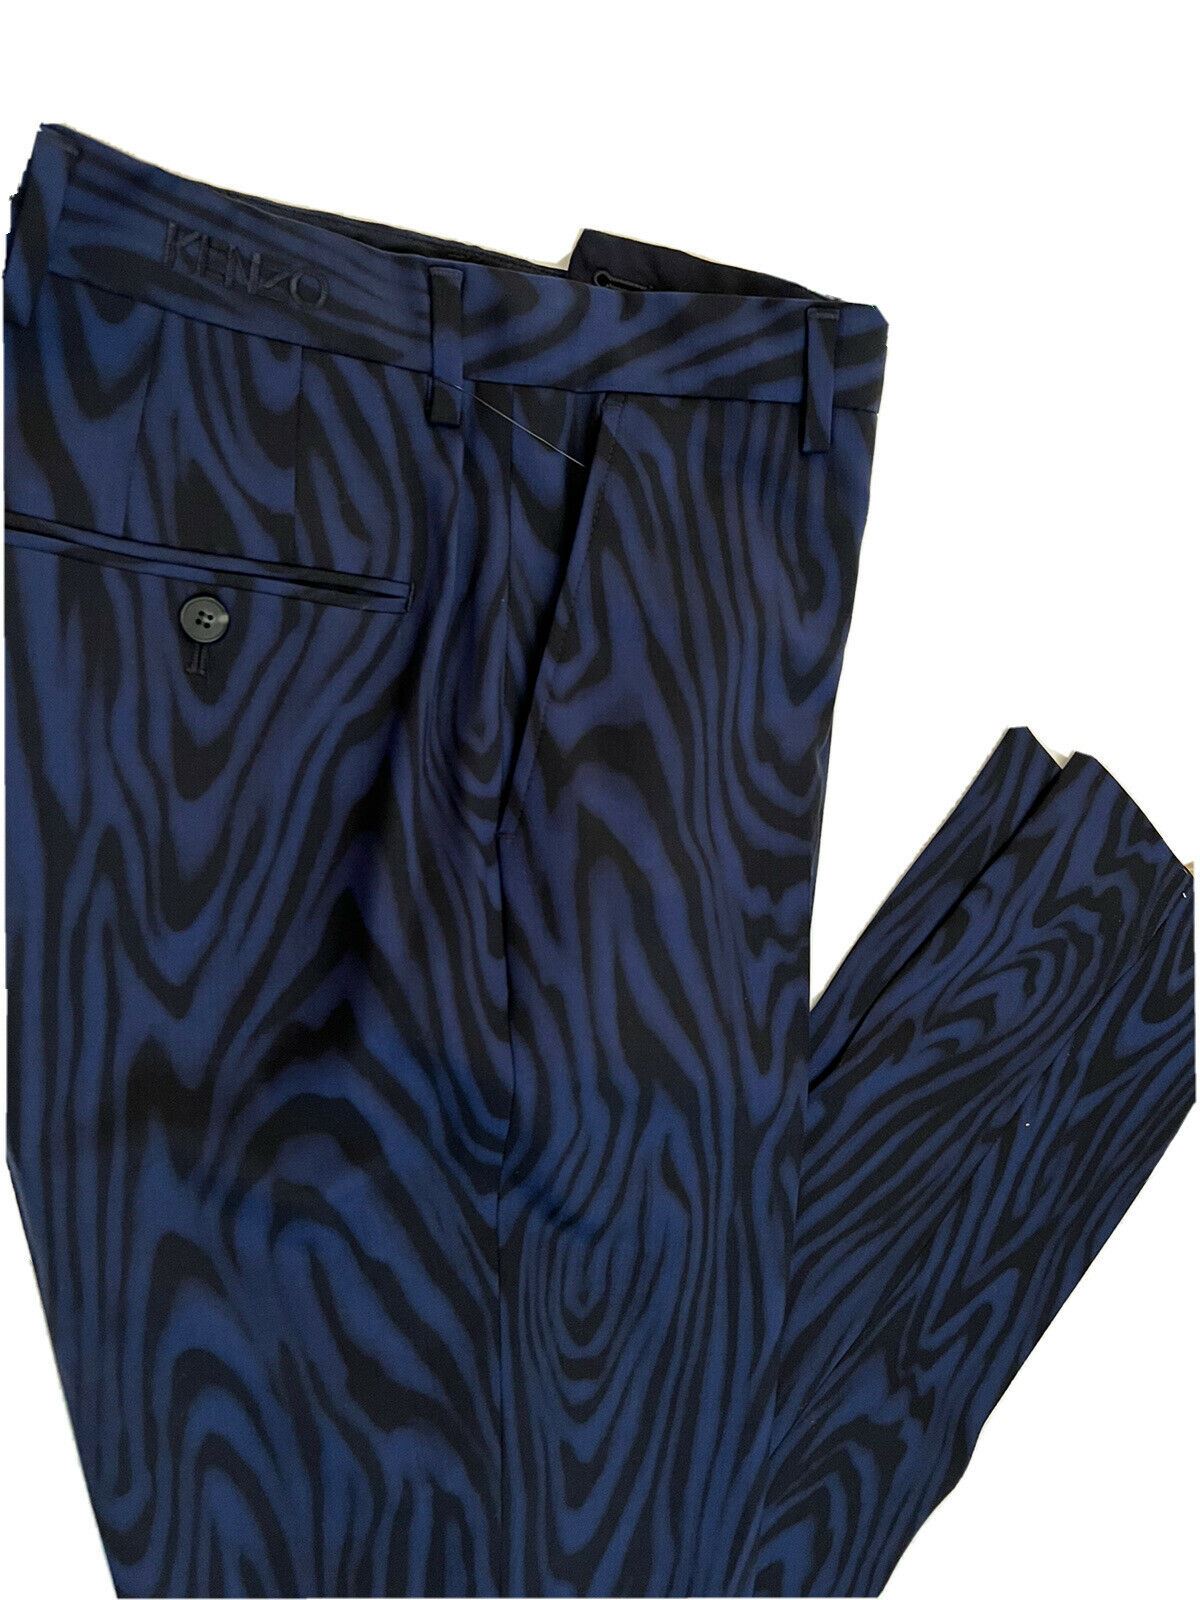 NWT $625 Kenzo Men's Navy Blue Wool Formal Tapered Slim Pants 30 US (46 Euro)